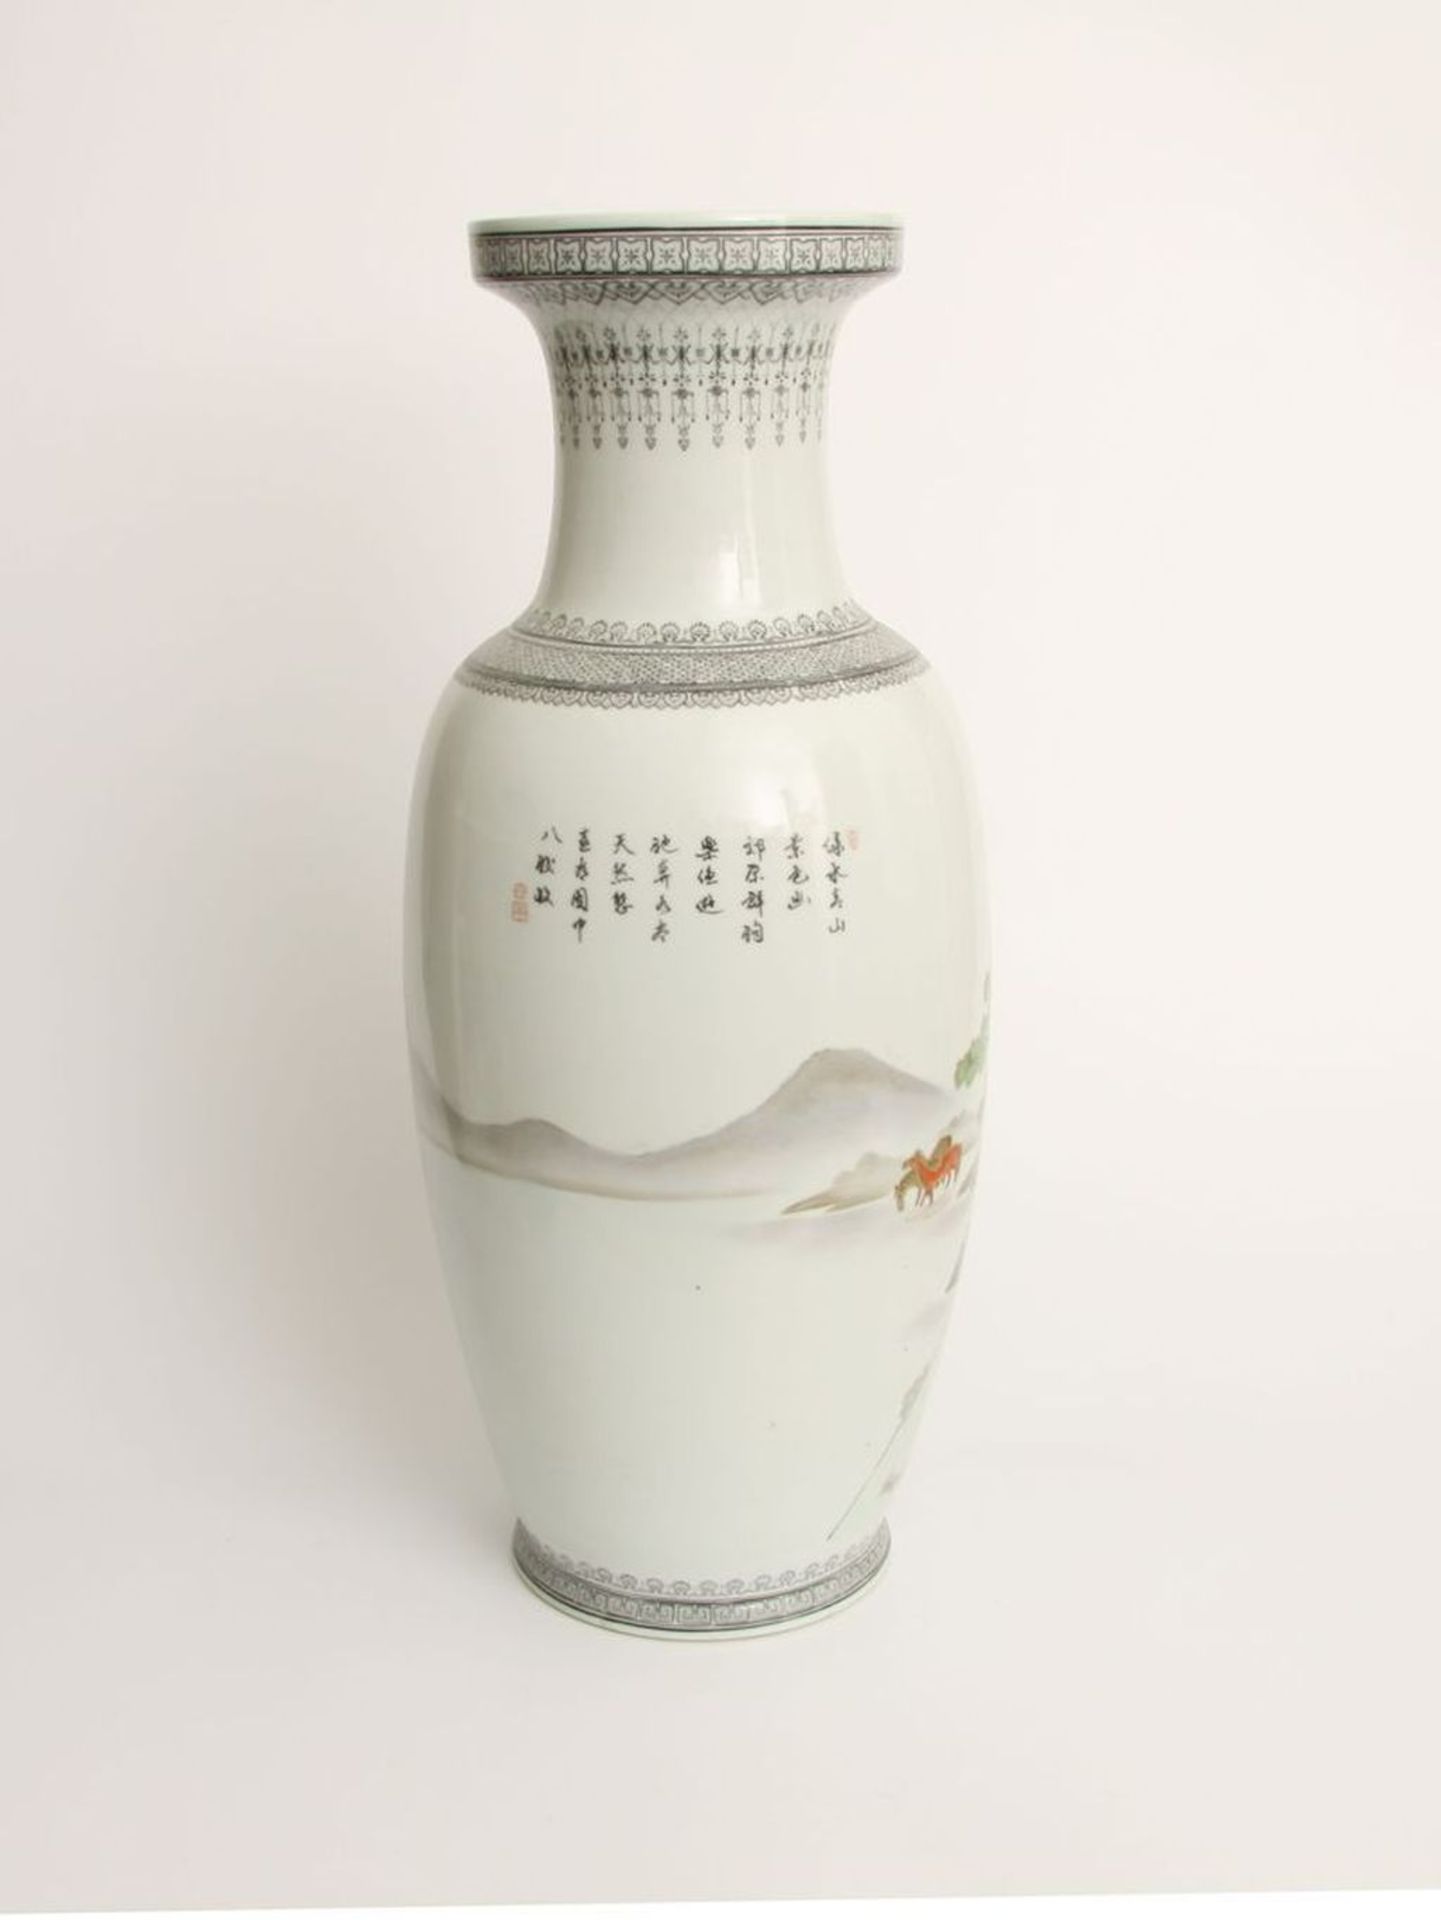 Bodenvase, China 20. Jh.Porzellan polychrom bemalt. Runder Stand gestreckt gebauchter Korpus, - Bild 2 aus 3